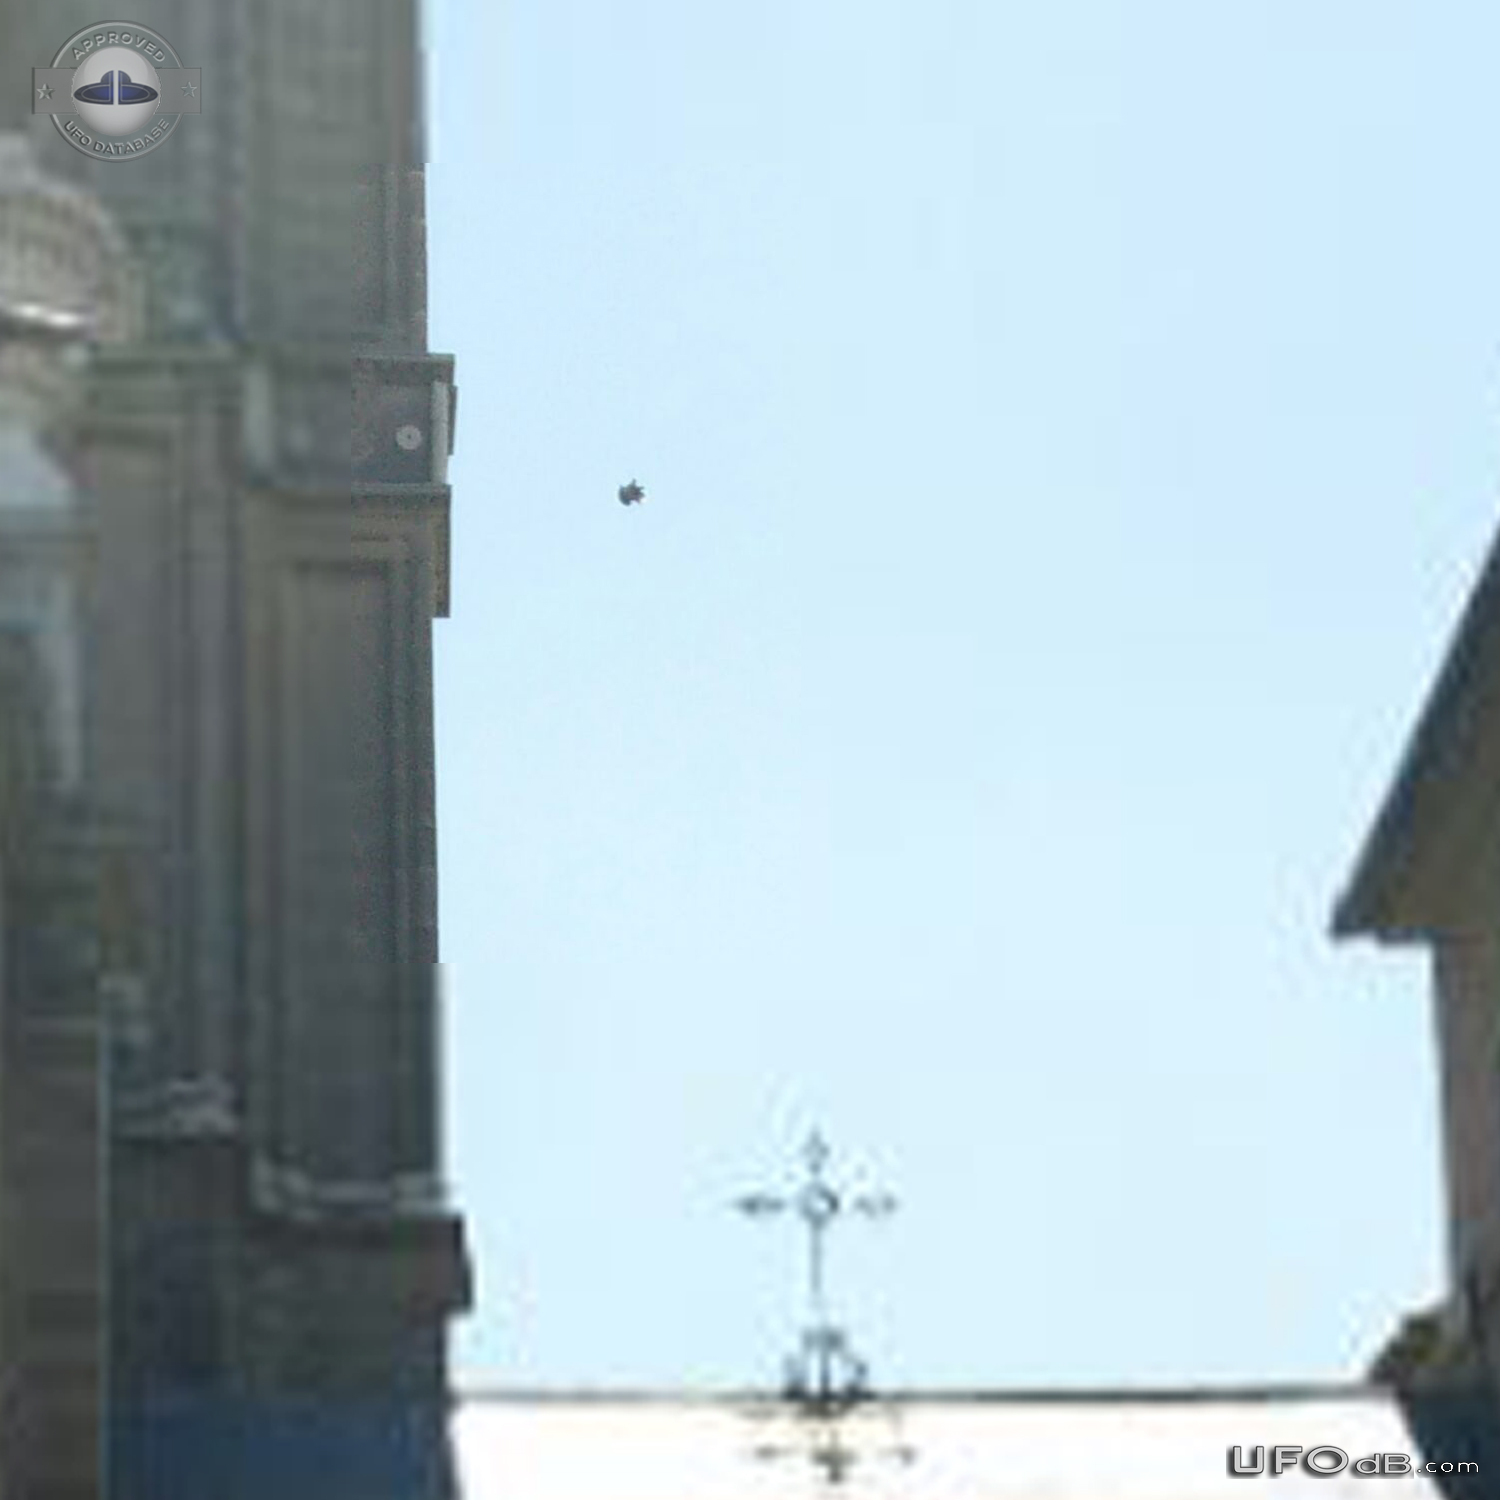 UFO caught on picture in Calle Arco de Palacio Toledo Spain 2015 UFO Picture #739-5